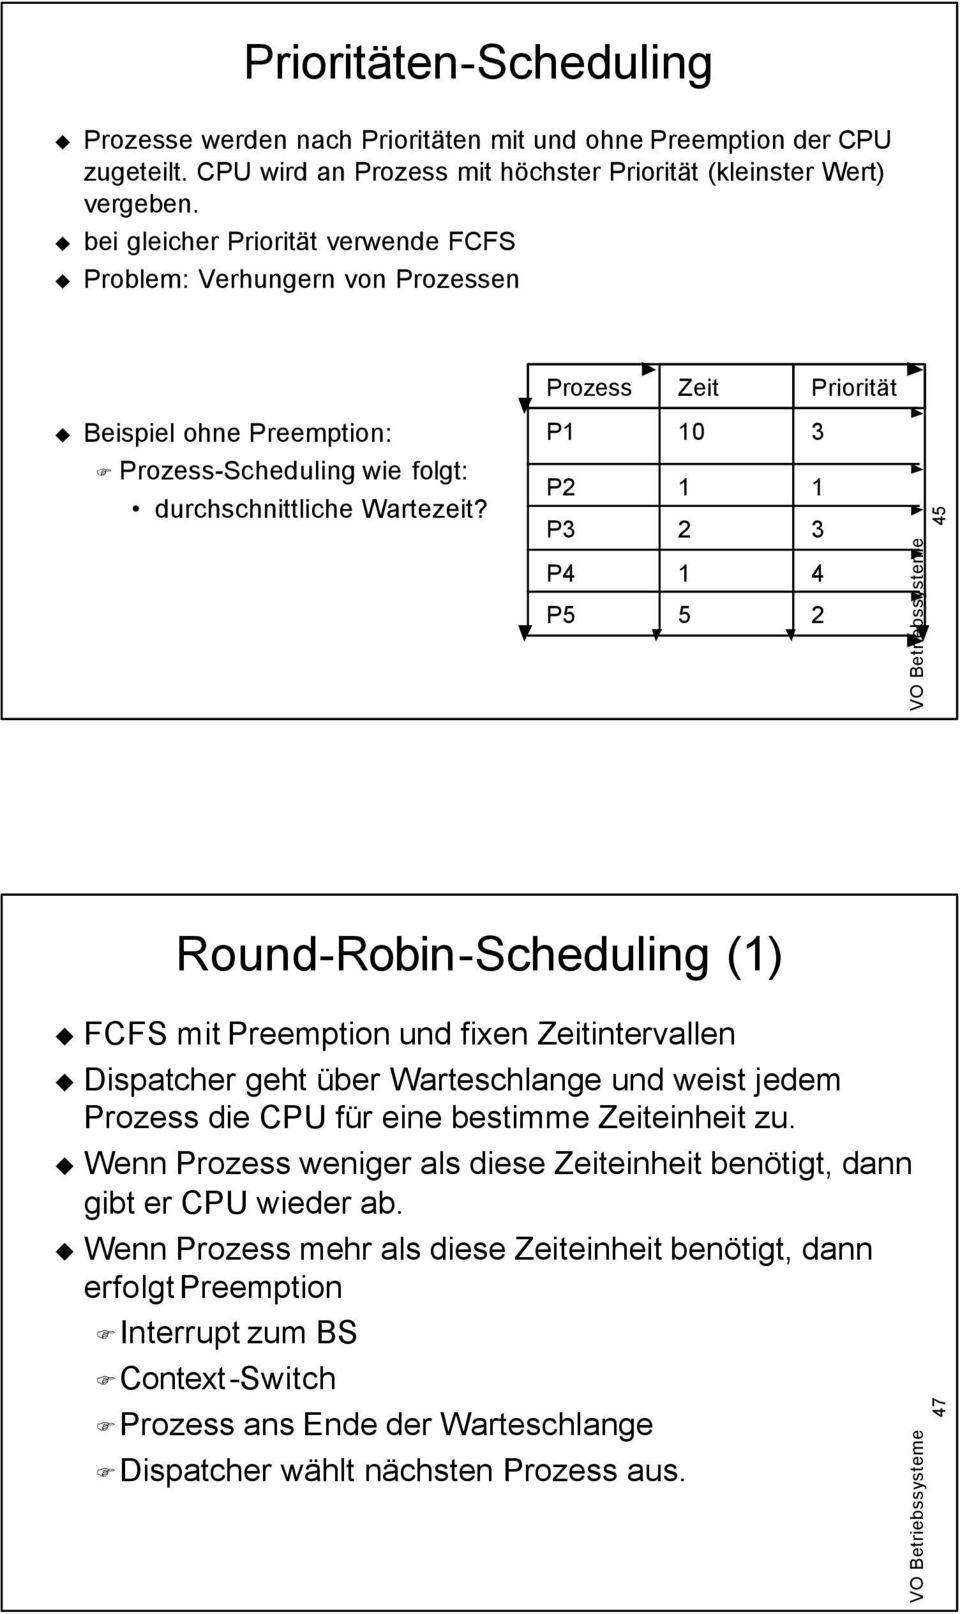 P2 P3 1 2 1 3 45 P4 P5 1 5 4 2 Round-Robin-Scheduling (1) FCFS mit Preemption und fixen Zeitintervallen Dispatcher geht über Warteschlange und weist jedem Prozess die CPU für eine bestimme